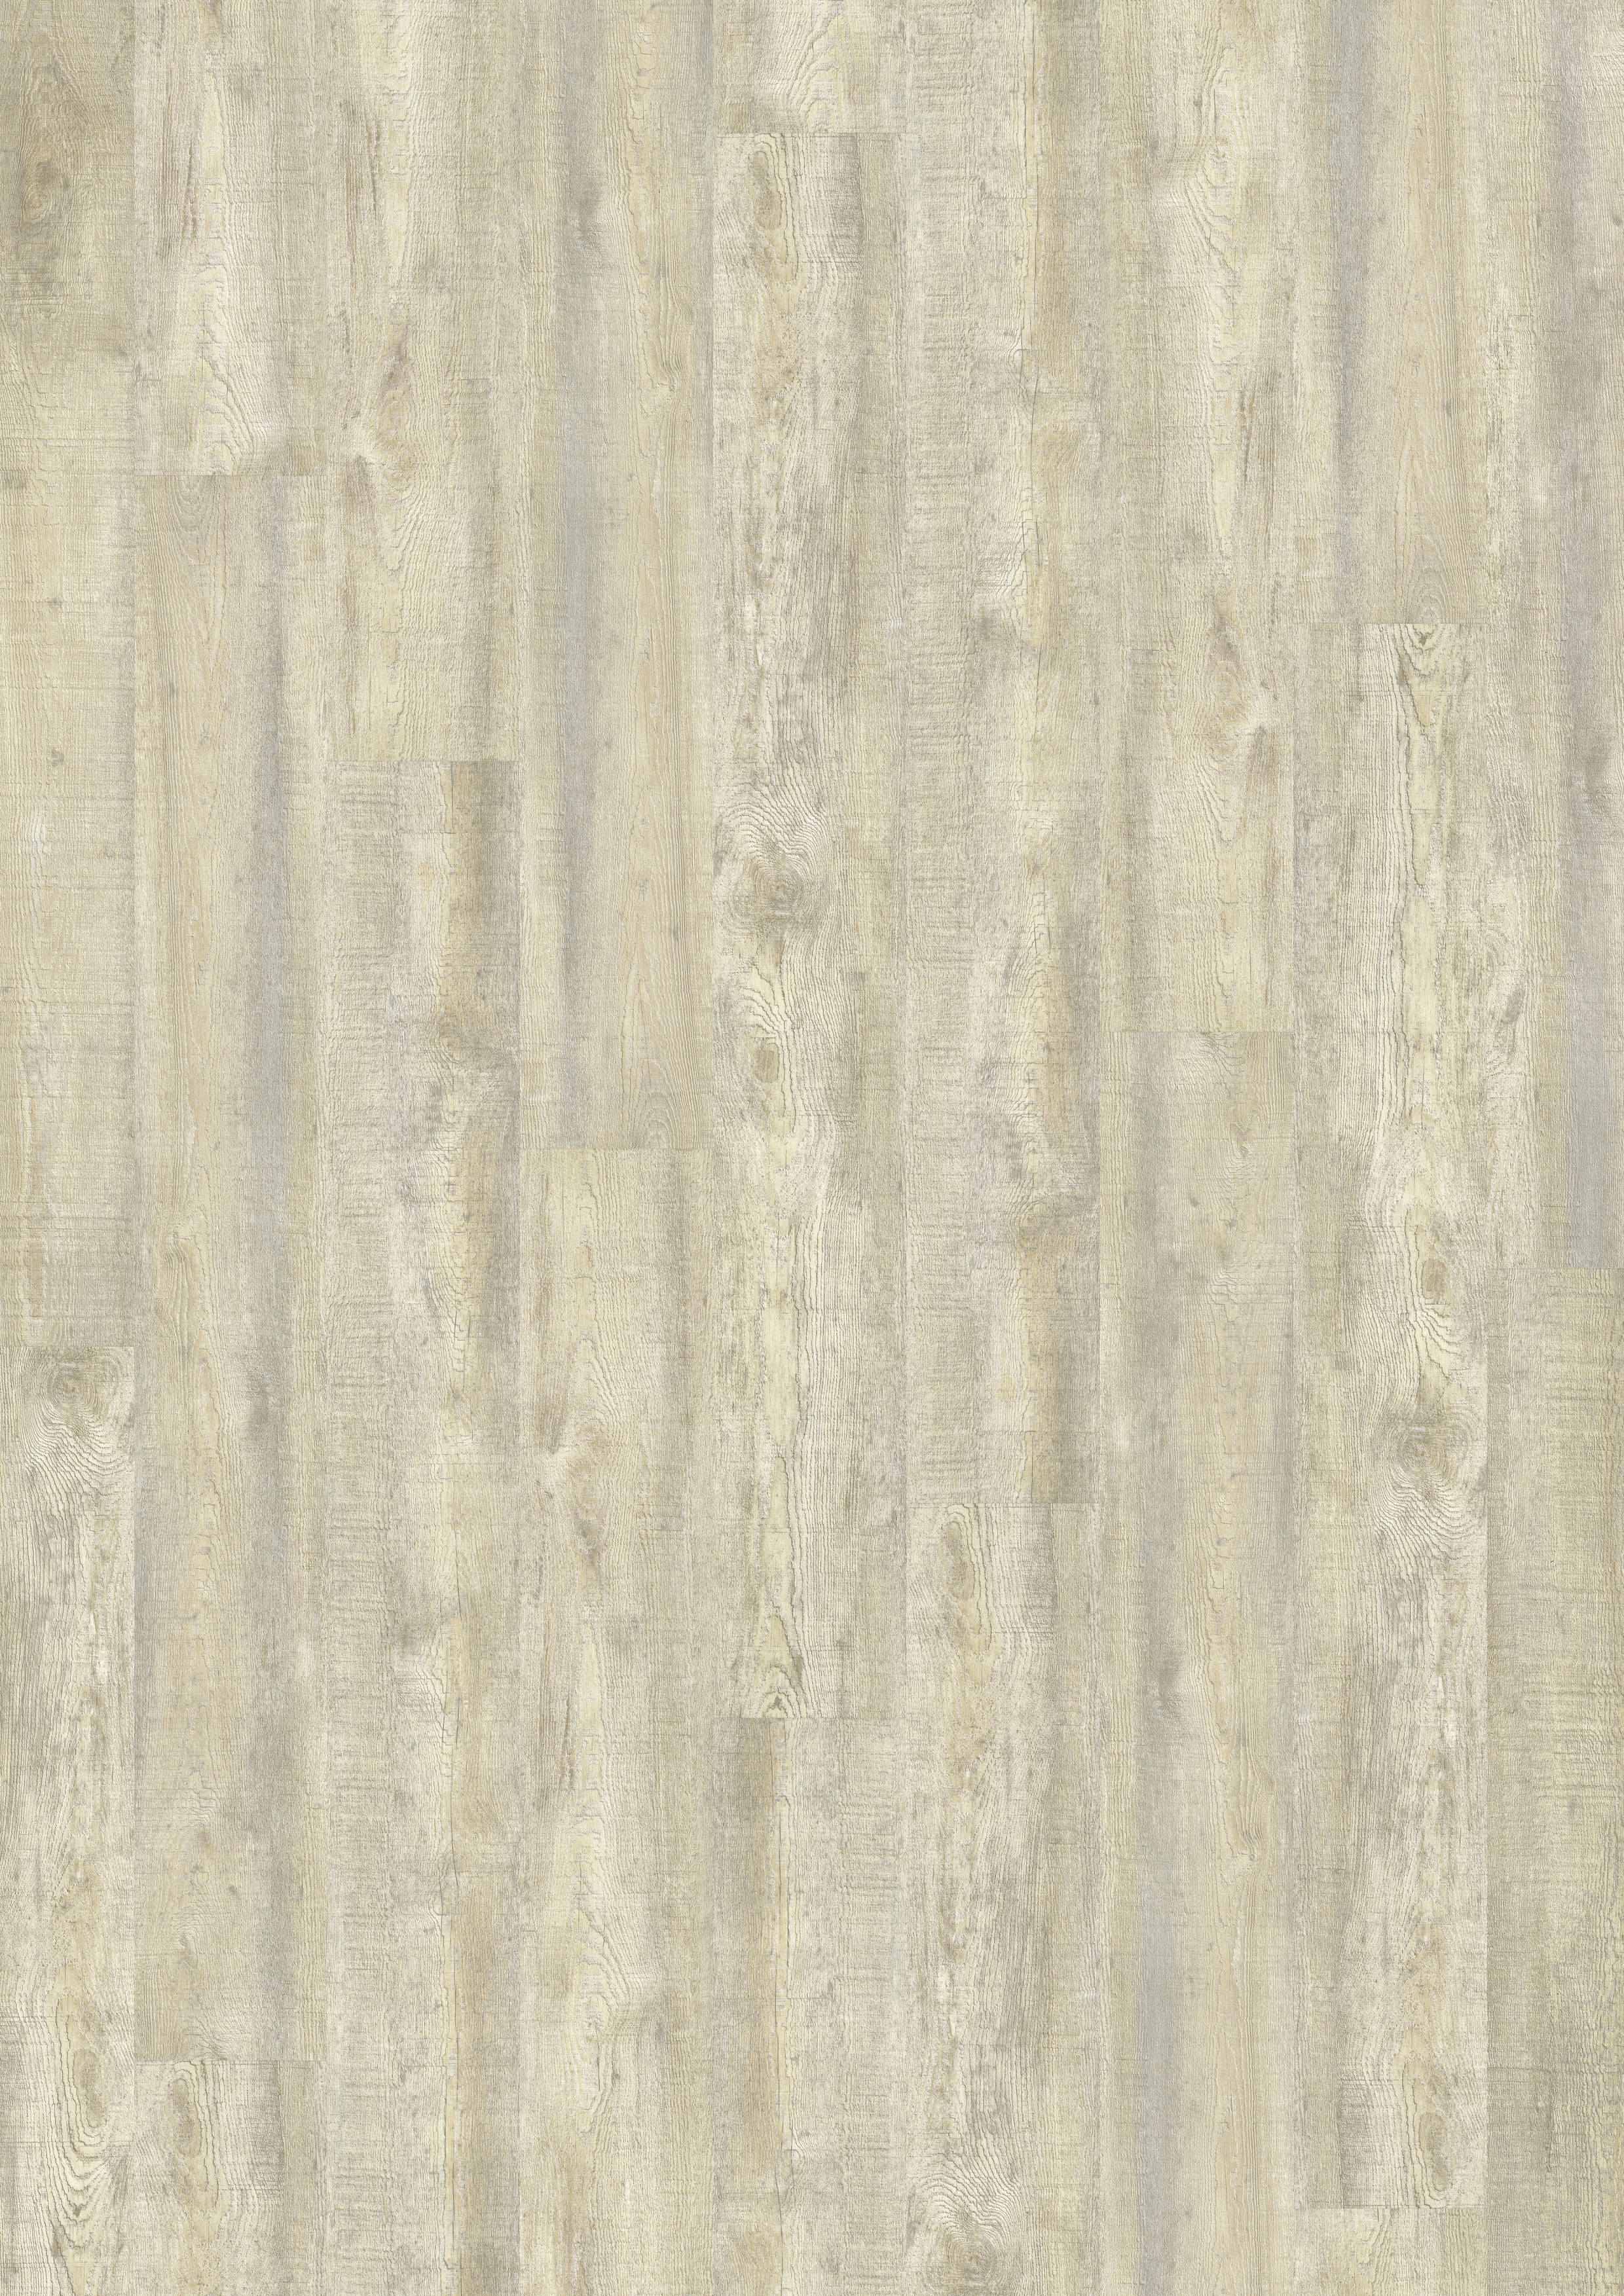 835P White Limed Oak